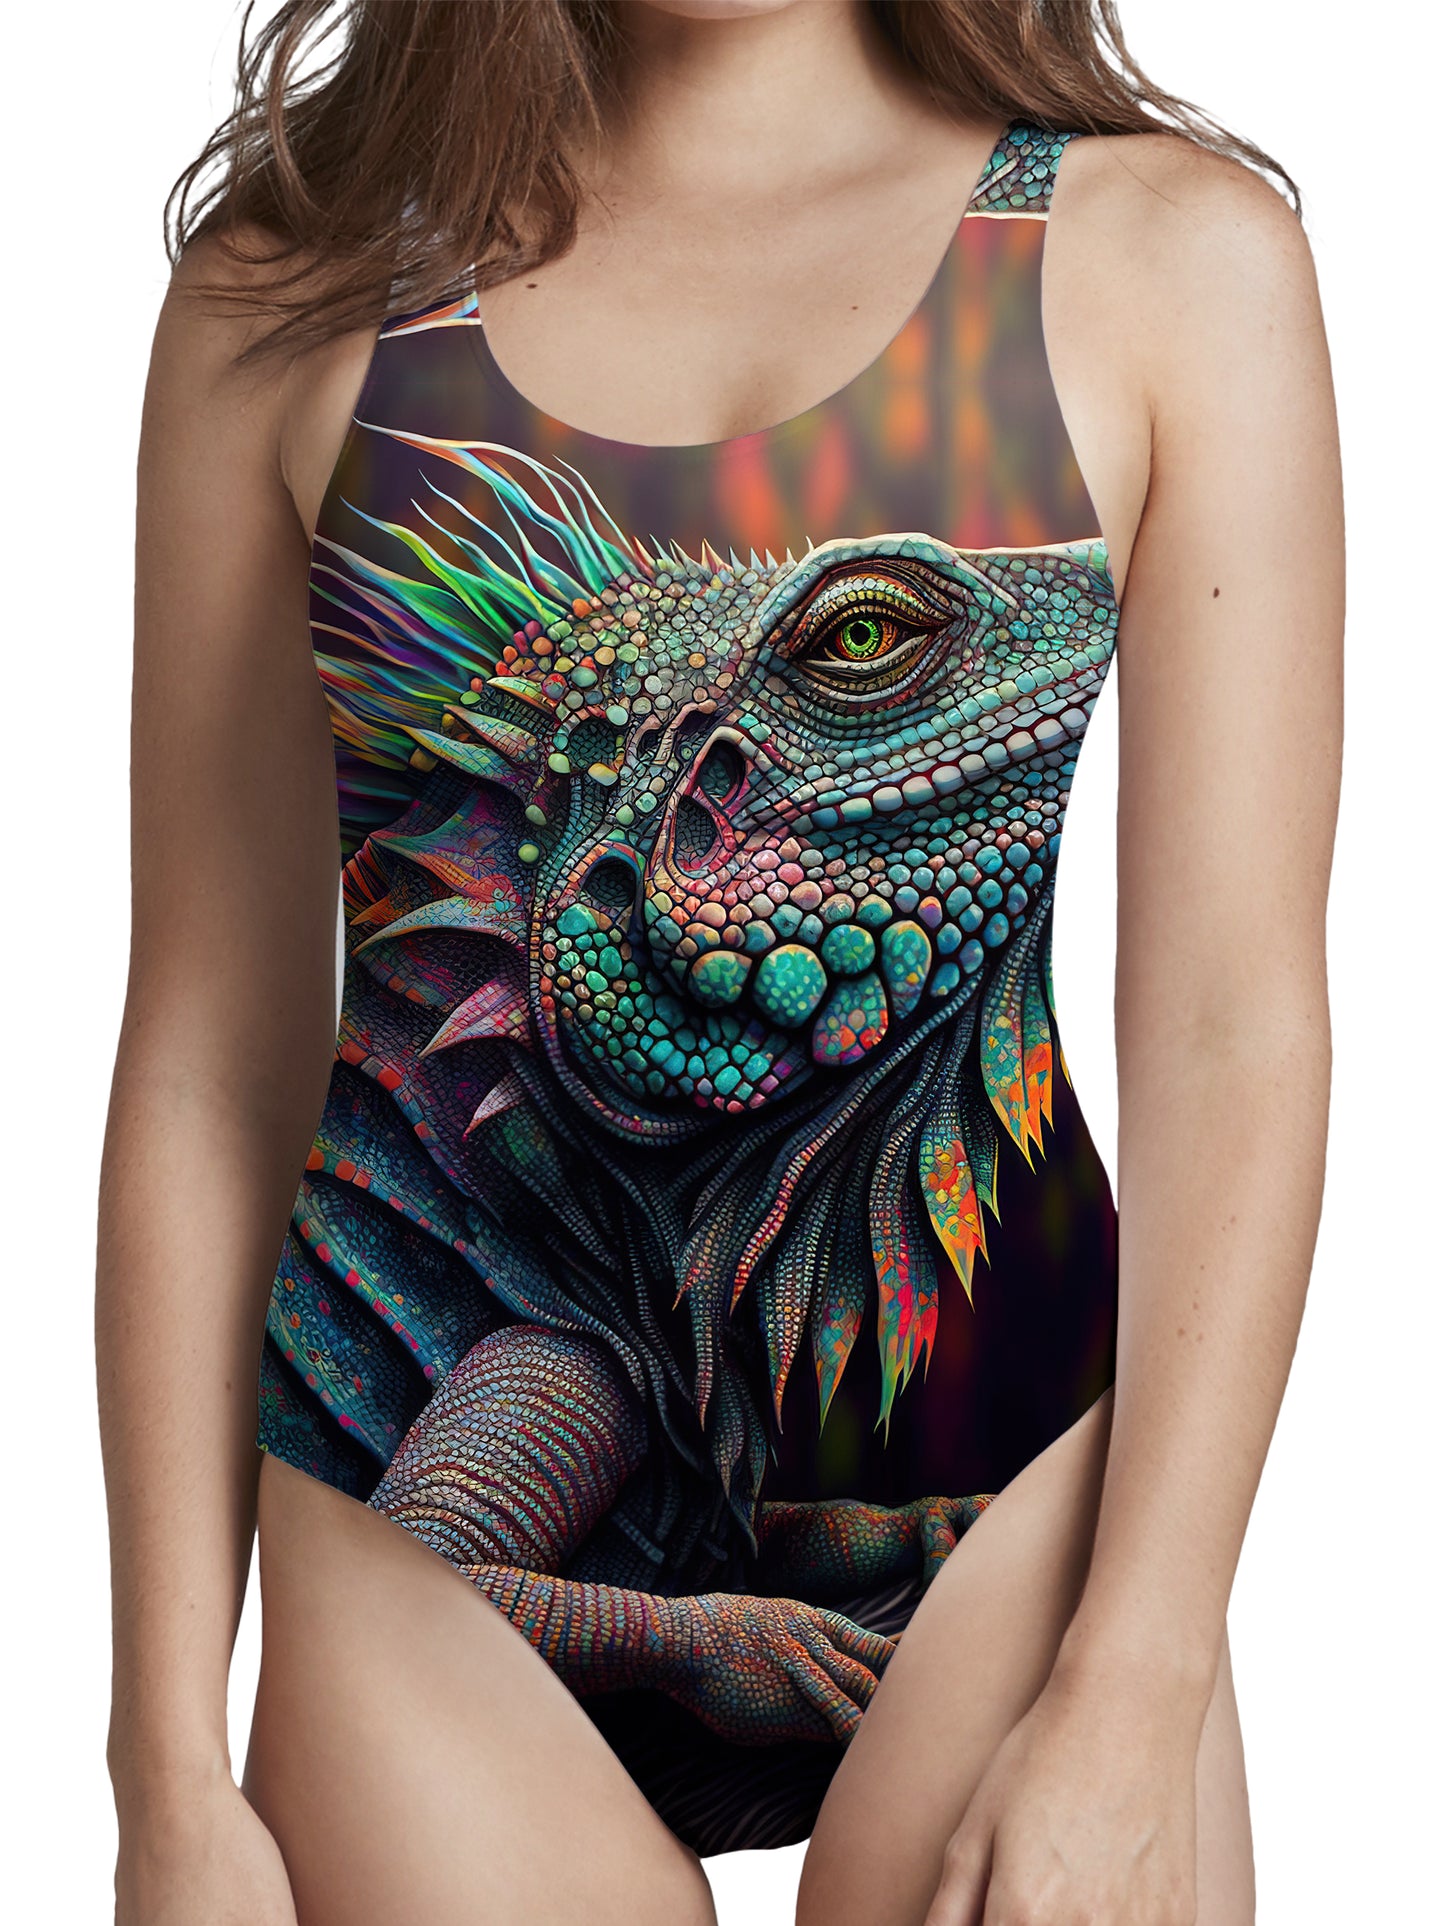 Psychedelic Giant Iguana 02 Low Cut One-Piece Swimsuit, iEDM, | iEDM